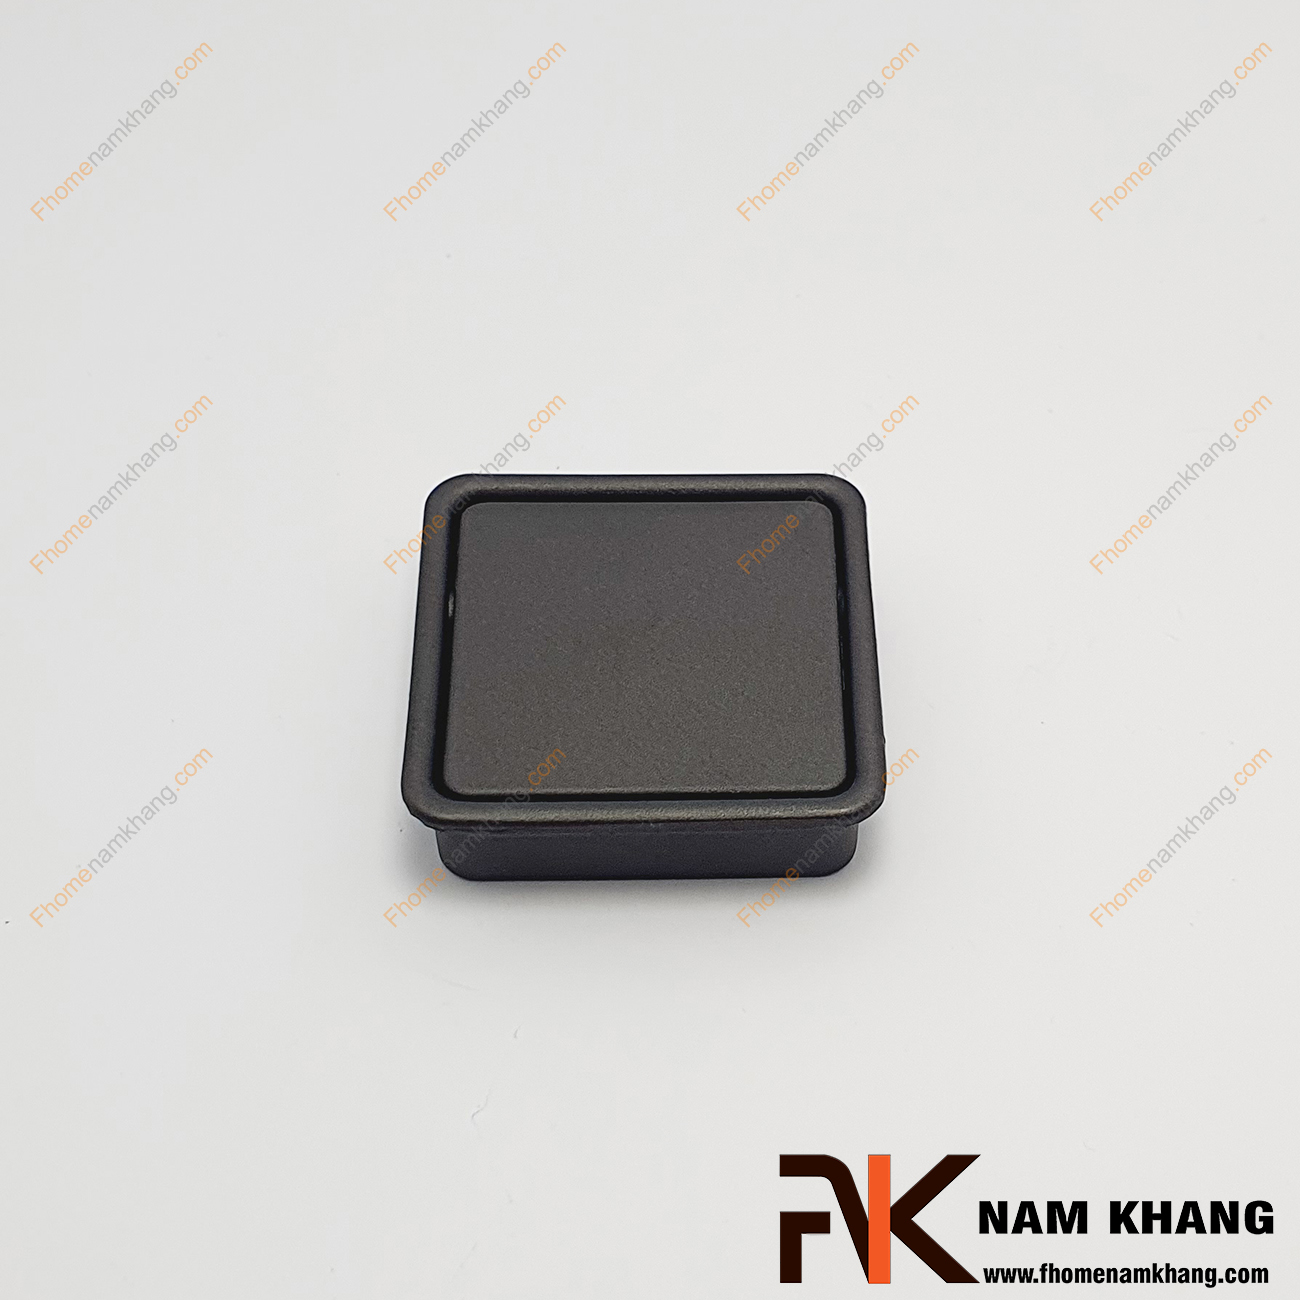 Núm âm tủ dạng vuông trơn màu đen mờ NK237-DM chuyên dùng cho các loại tủ đặt ở những nơi có không gian hạn chế hoặc dùng để nâng cao tính thẫm mỹ của sản phẩm.